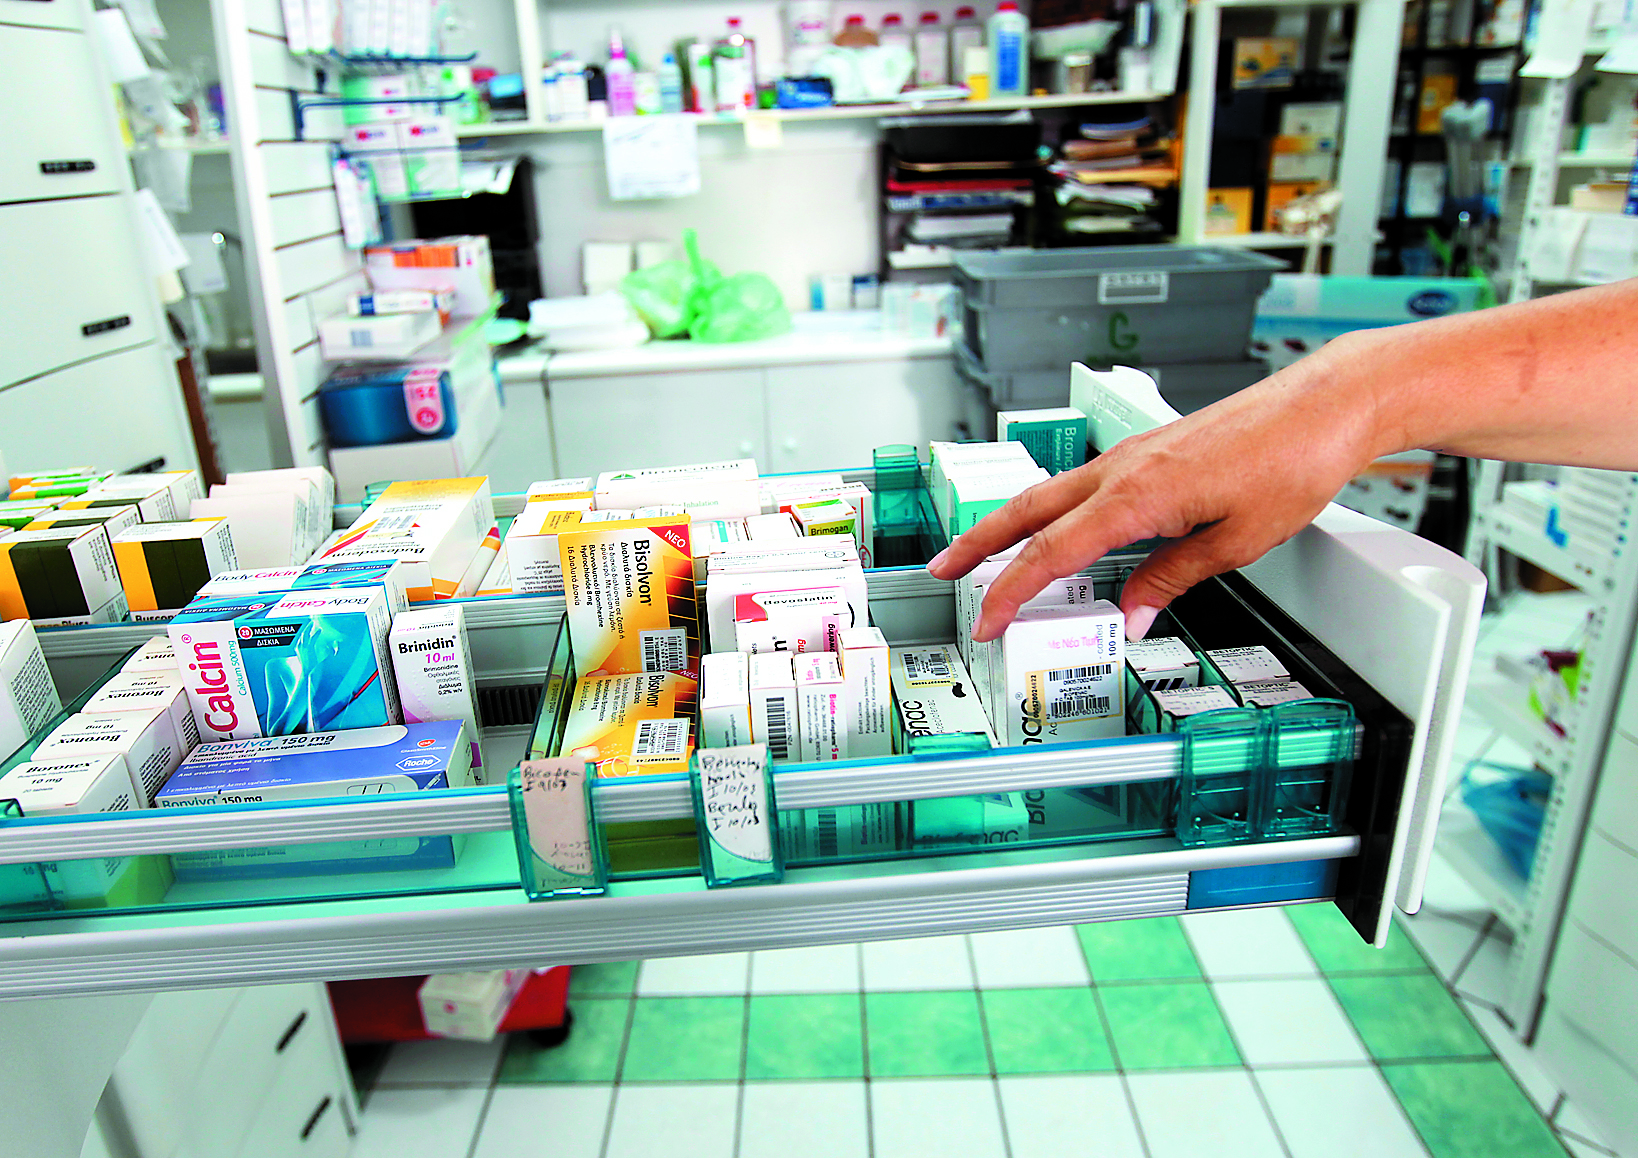 Μειωμένες τιμές για 12.500 σκευάσματα προβλέπει το νέο δελτίο τιμών φαρμάκων